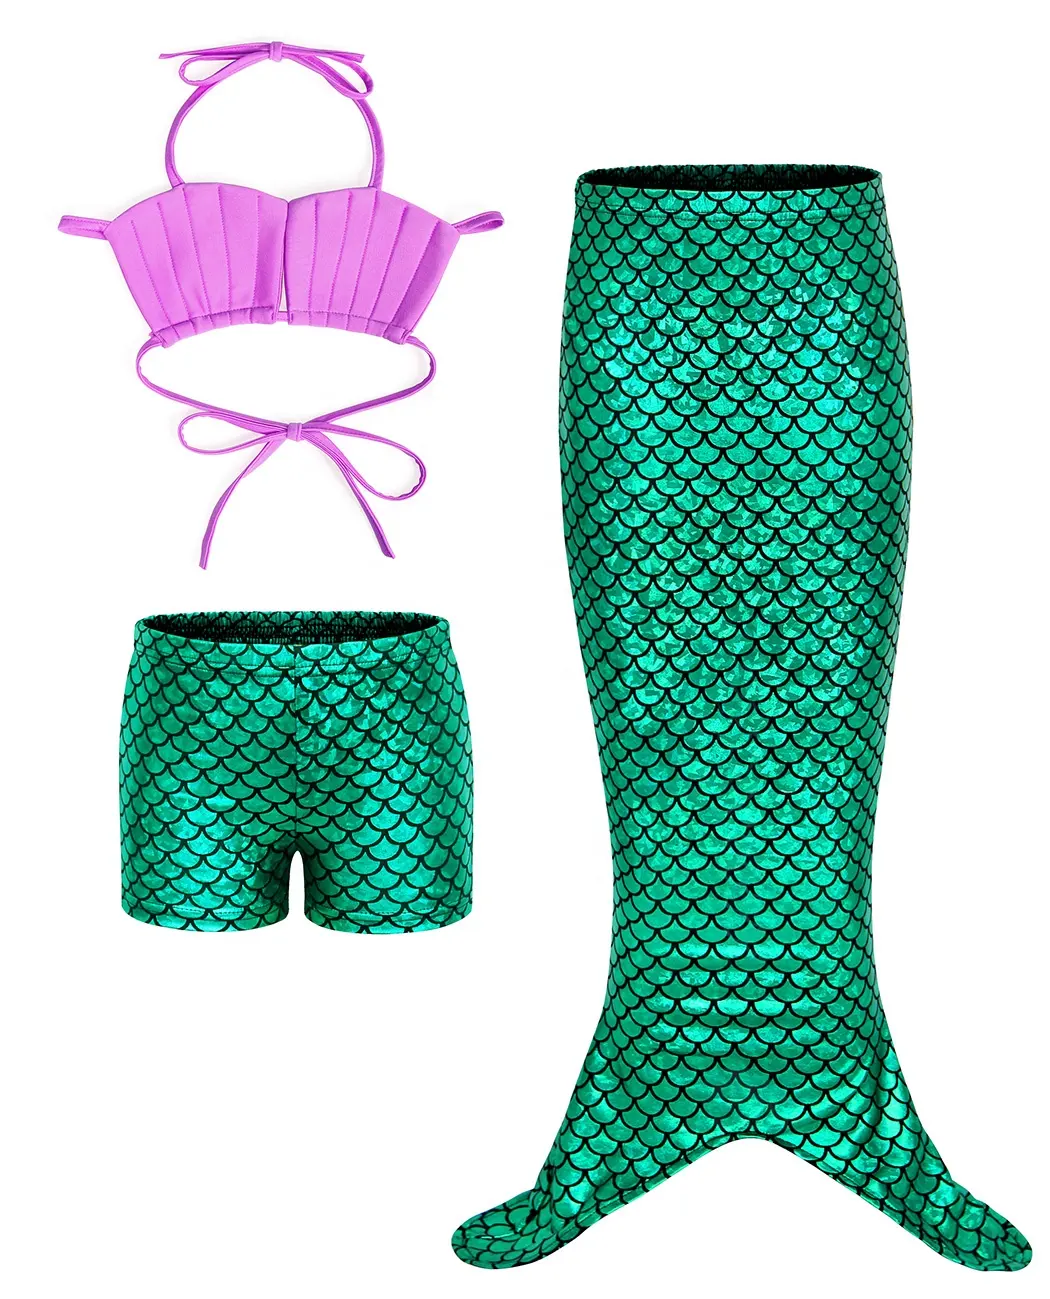 Mädchen bekleidung Sets Kinder Bikini Bademode Sommer mode 3 Stück Meerjungfrau Schwanz Bade bekleidung Mädchen Badeanzüge Neue Sling Badeanzüge